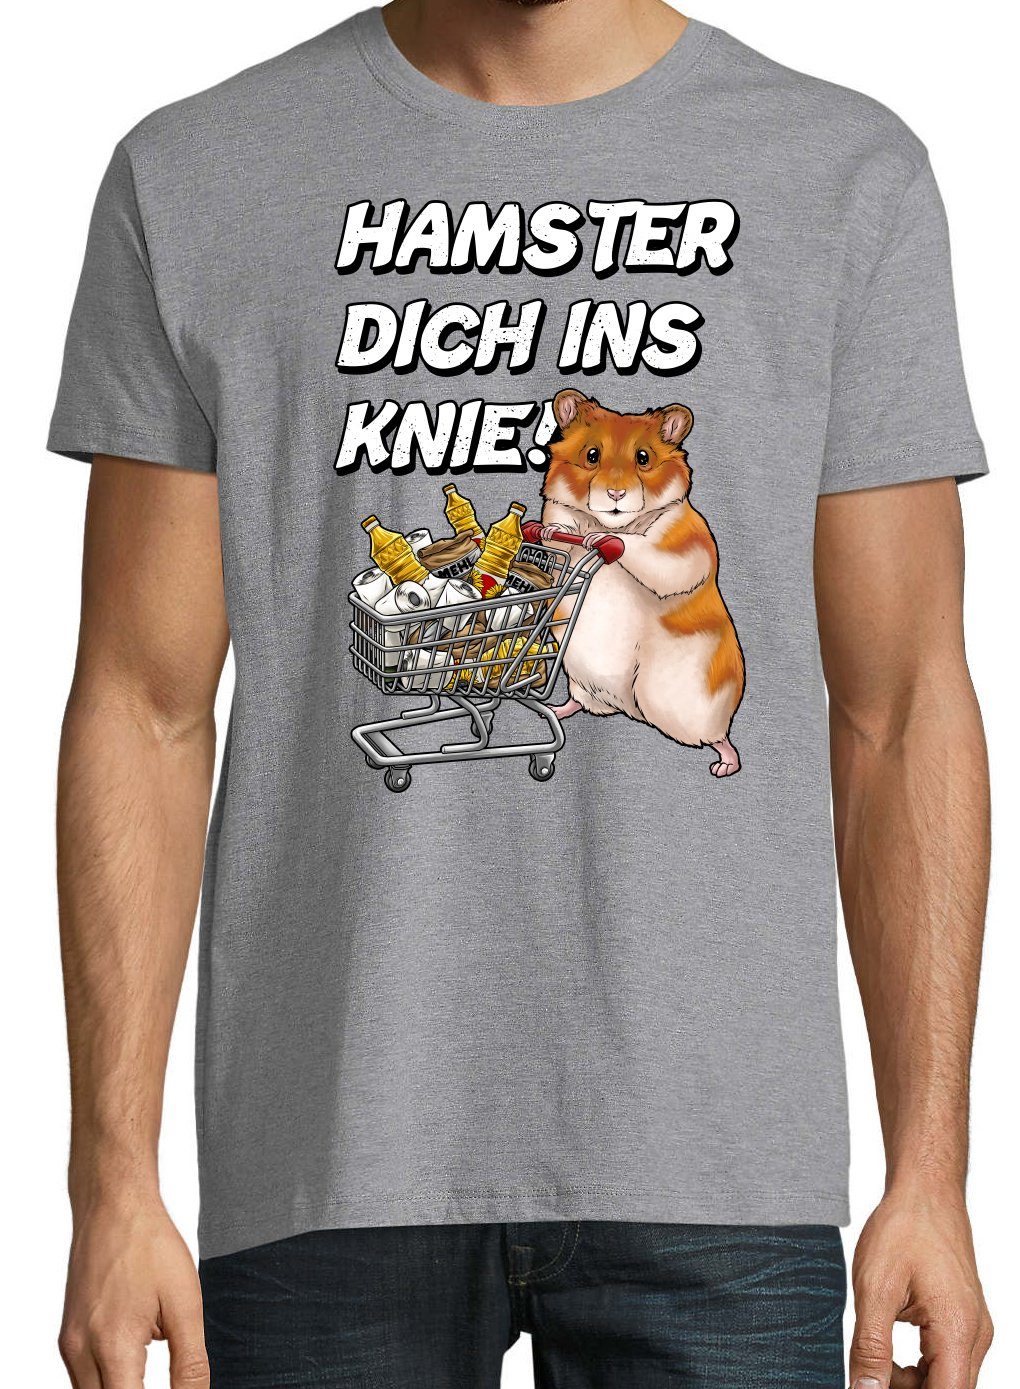 T-Shirt Youth Spruch INS HAMSTER mit Print-Shirt KNIE DICH Grau Herren Aufdruck Designz lustigem